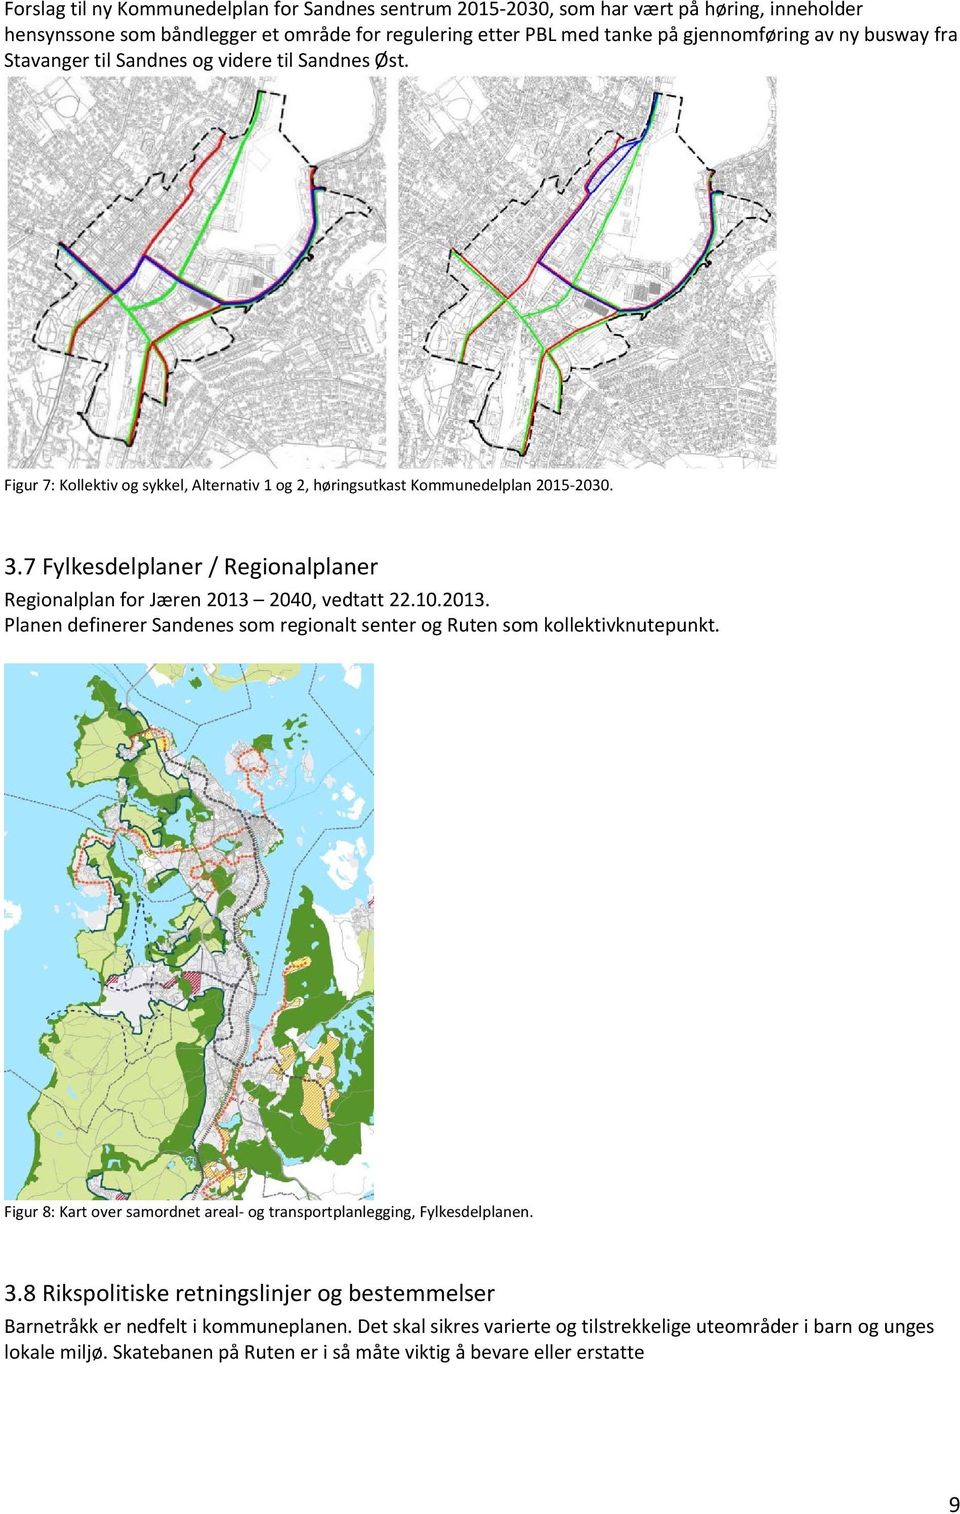 7 Fylkesdelplaner / Regionalplaner Regionalplan for Jæren 2013 2040, vedtatt 22.10.2013. Planen definerer Sandenes som regionalt senter og Ruten som kollektivknutepunkt.